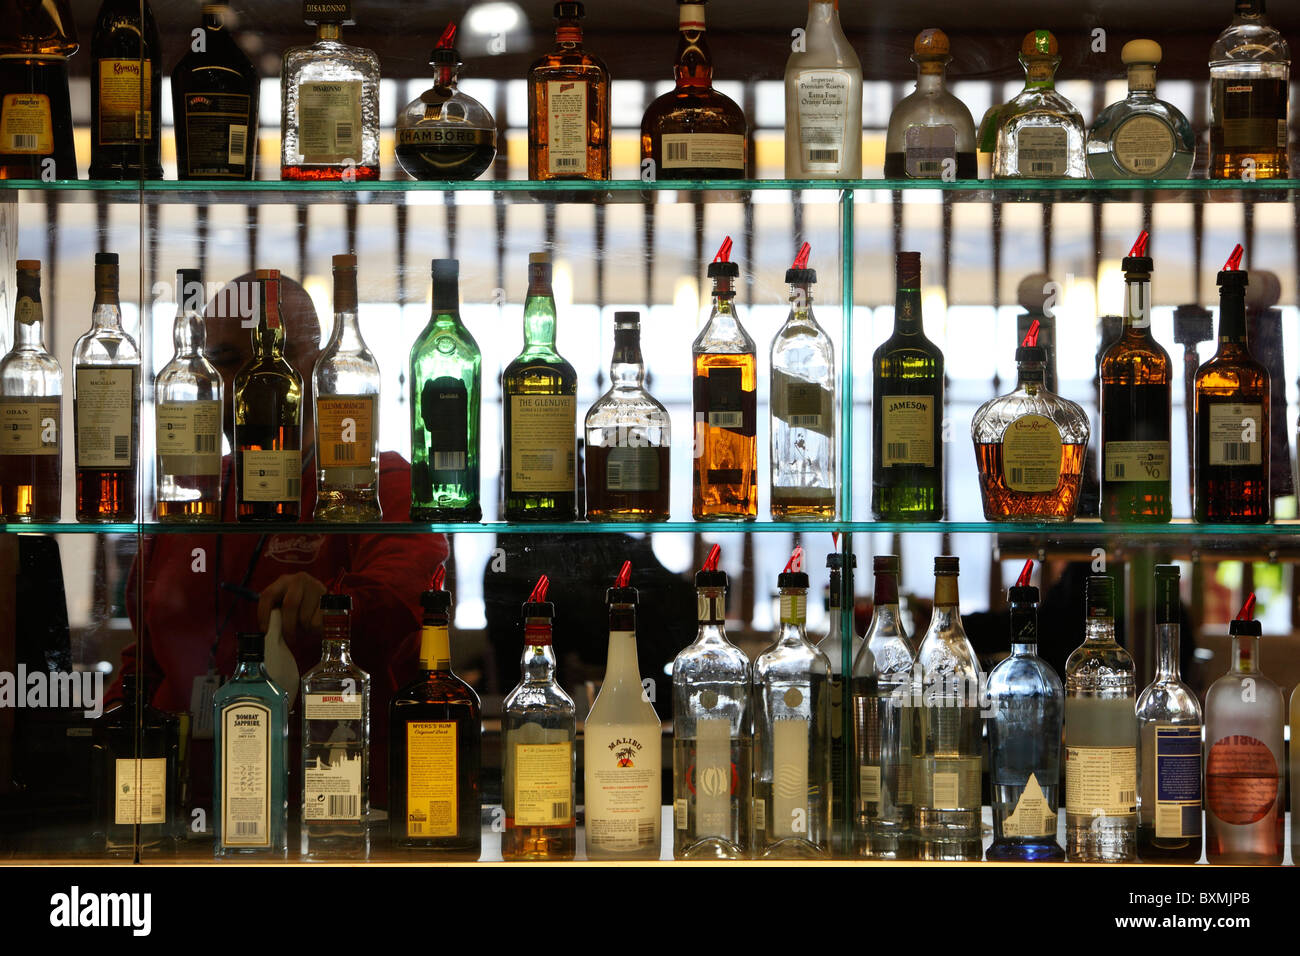 Liquor bottles on shelves at a bar Stock Photo